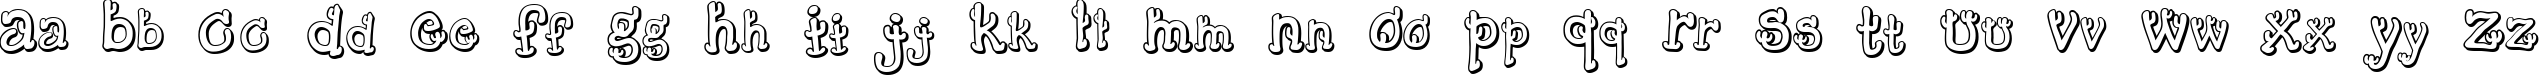 Пример написания английского алфавита шрифтом Cactus Sandwich Plain FM